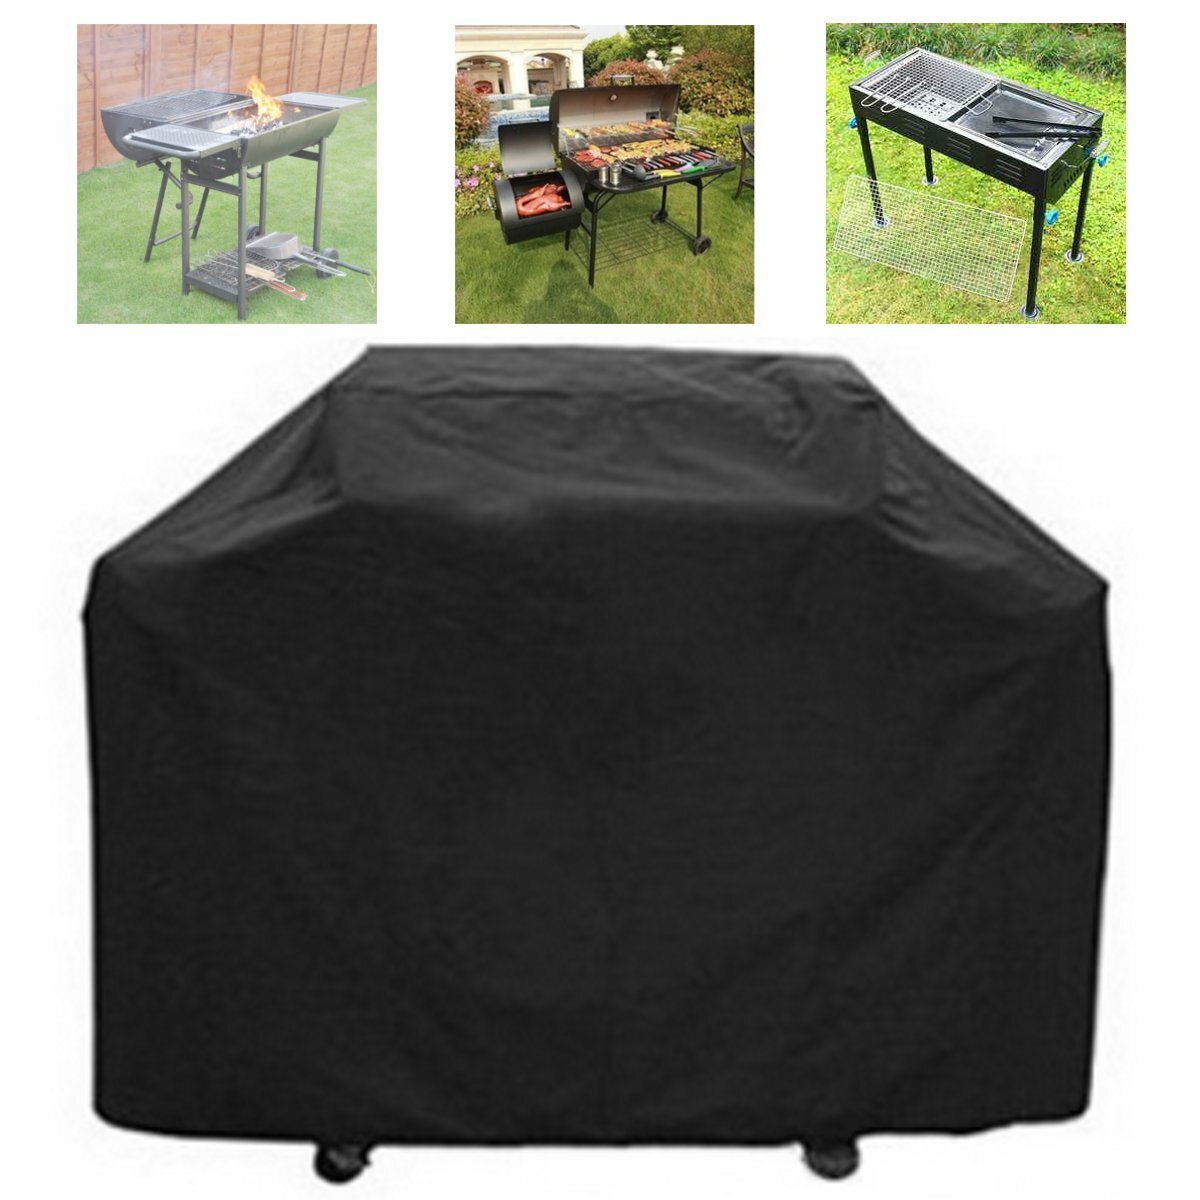 59 Pollici Griglia per barbecue Barbecue Copertura impermeabile Heavy Duty UV Protector Outdoor Yard campeggio